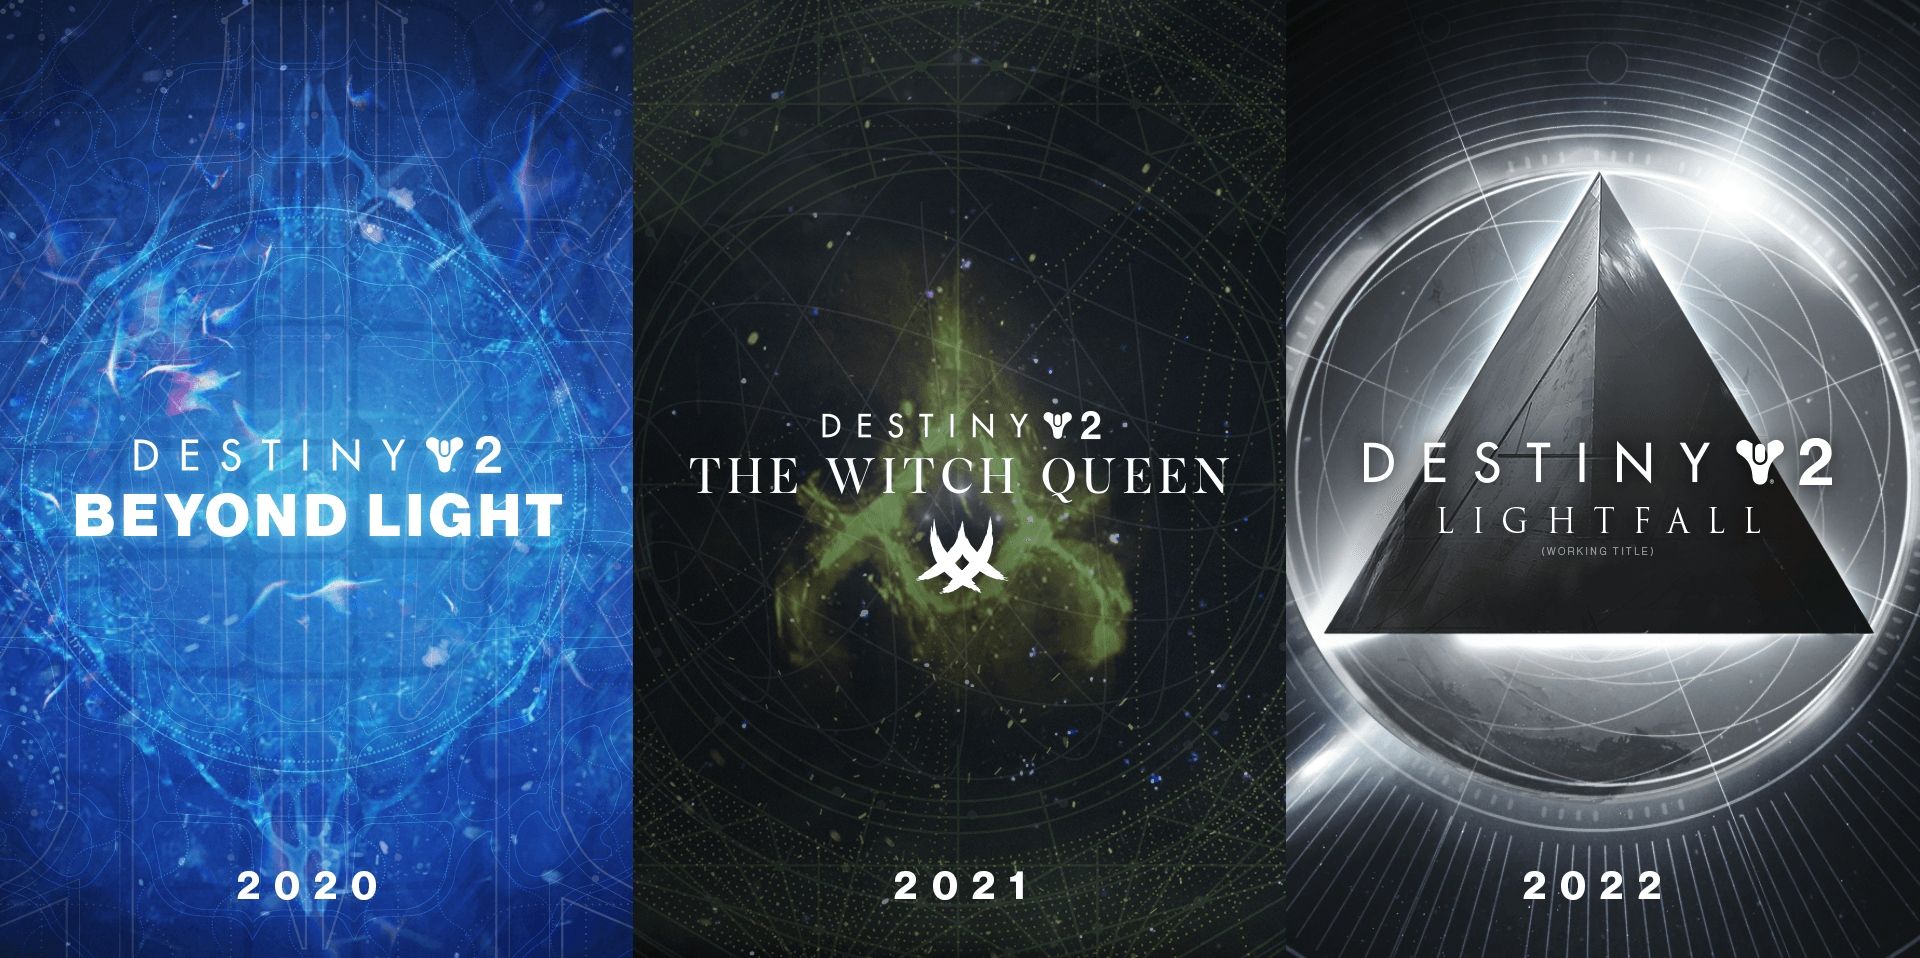 Destiny 2 Roadmap Expansion Release Calendar Beyond Light Witch Queen Lightfall